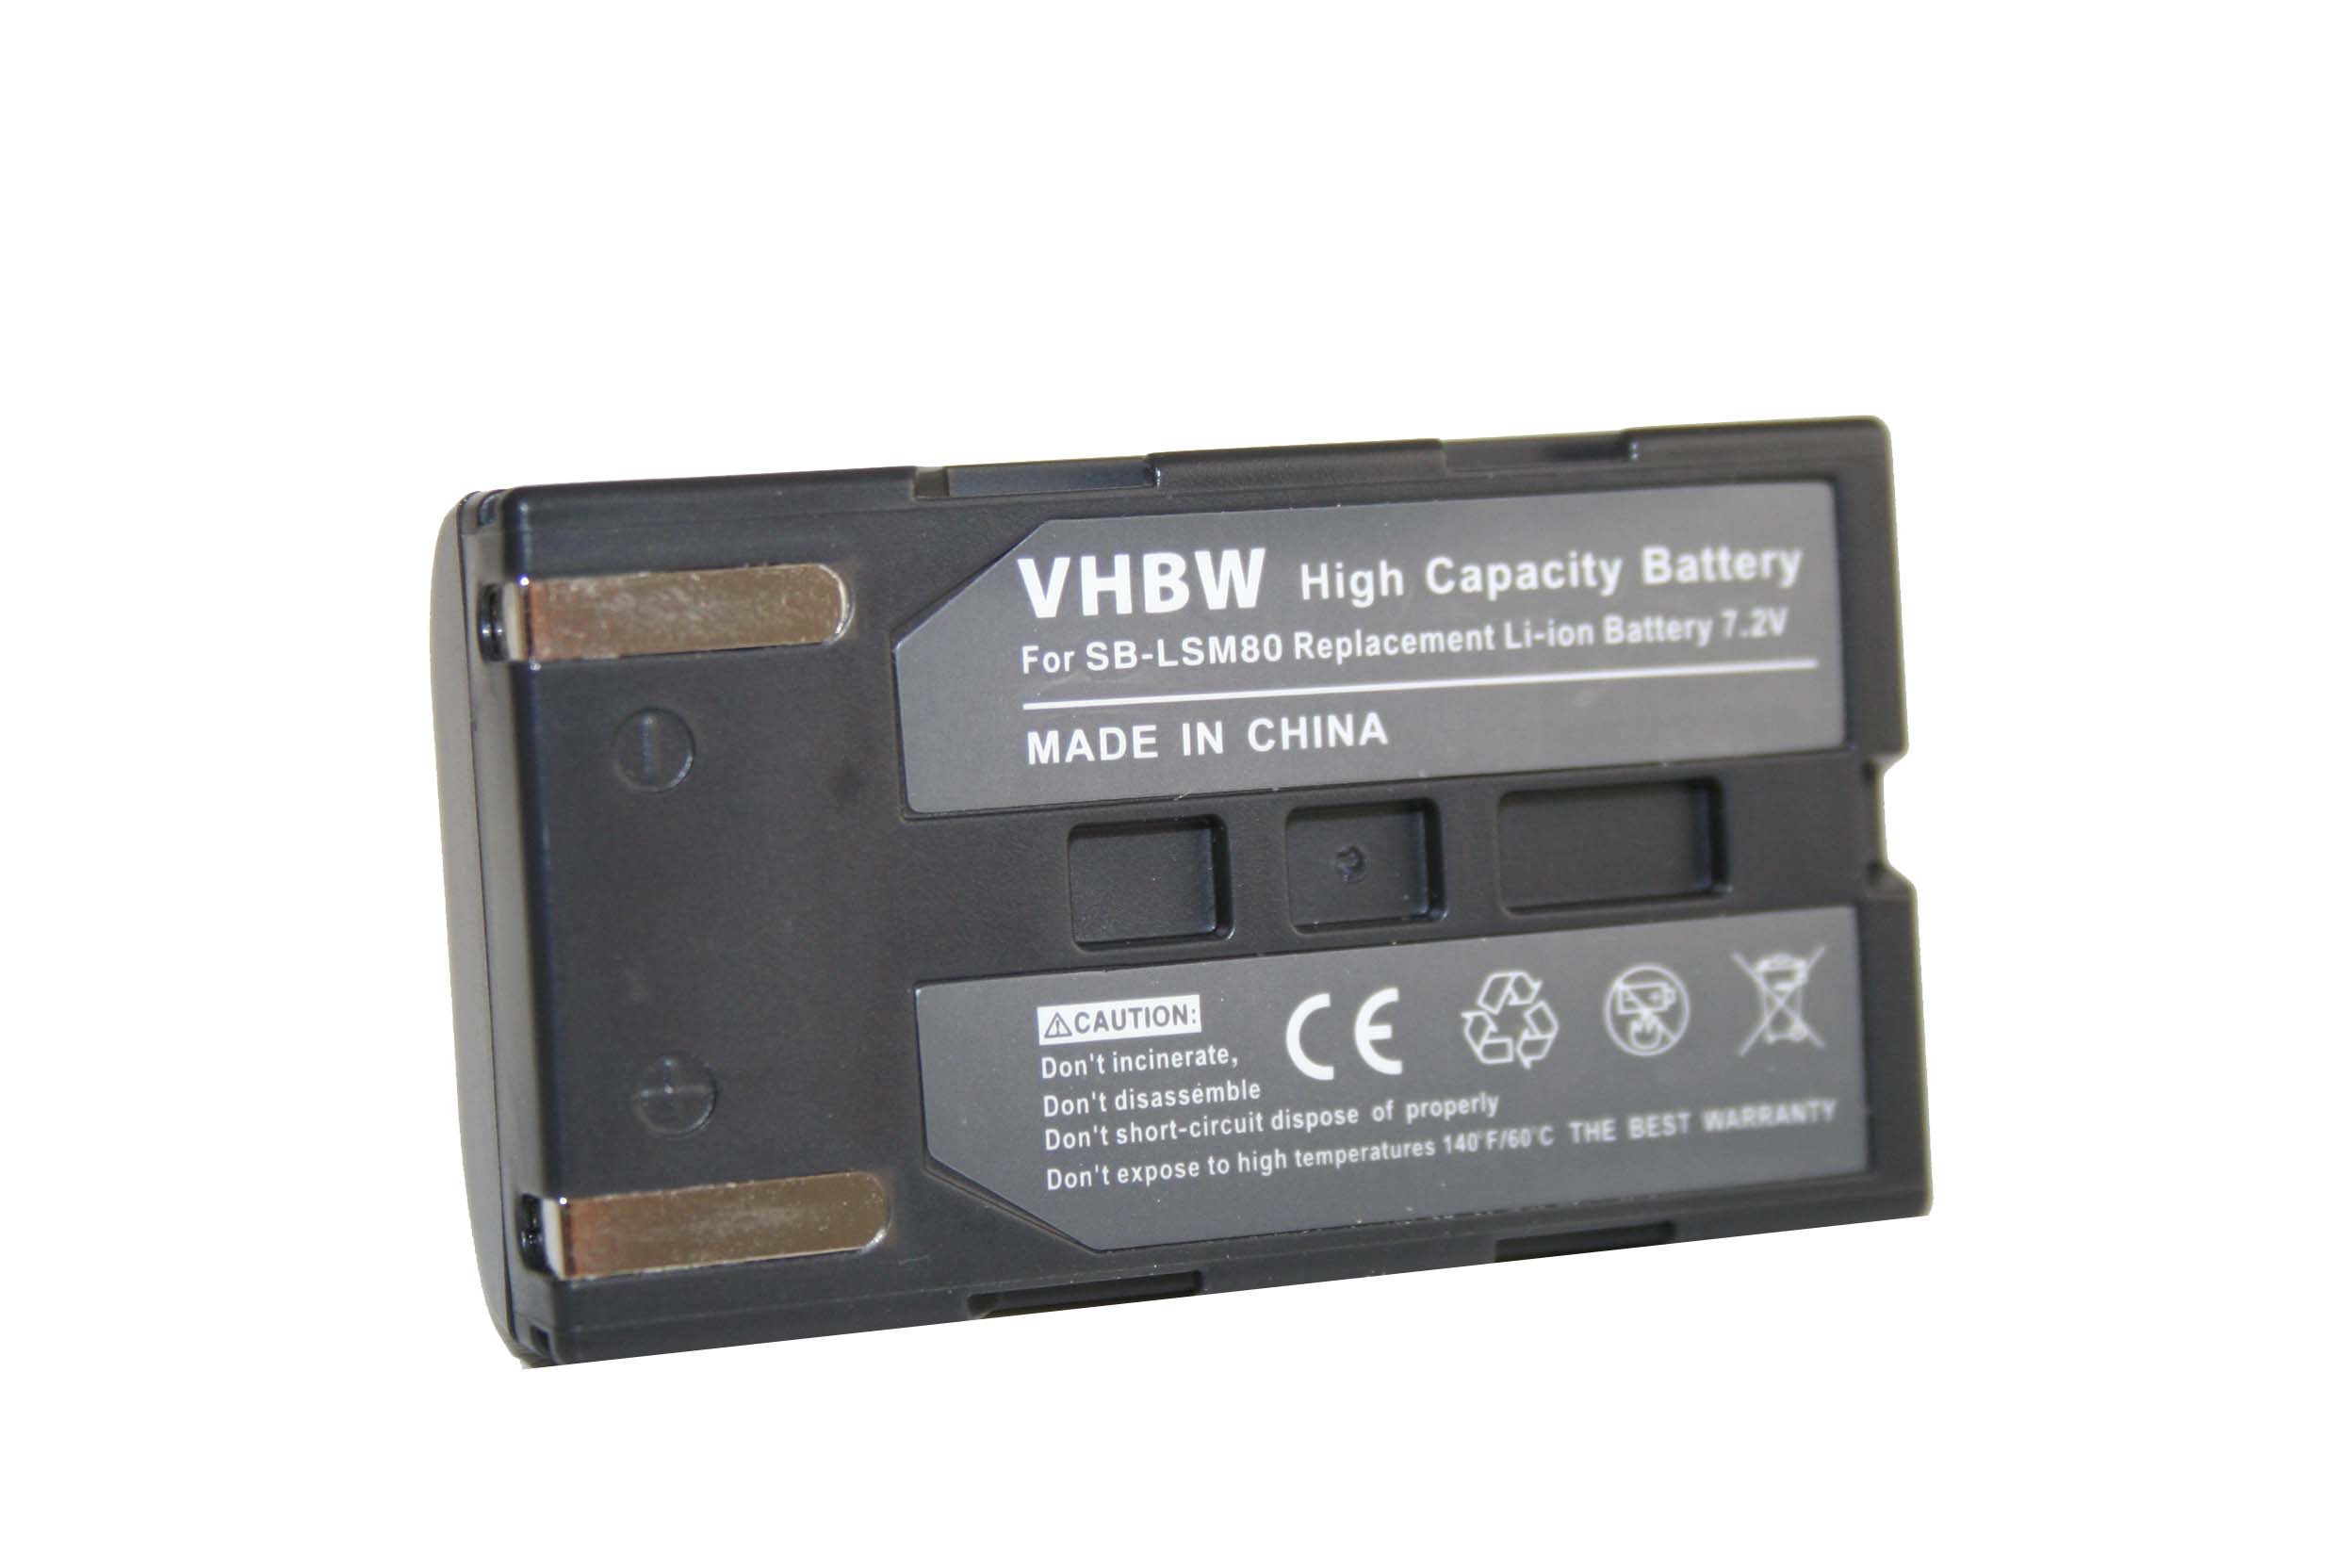 VHBW kompatibel mit Samsung VP-D354i, VP-D354 7.2 VP-D362, Videokamera, VP-D361W, VP-D361, Li-Ion Volt, 600 - Akku VP-D355i, VP-D355